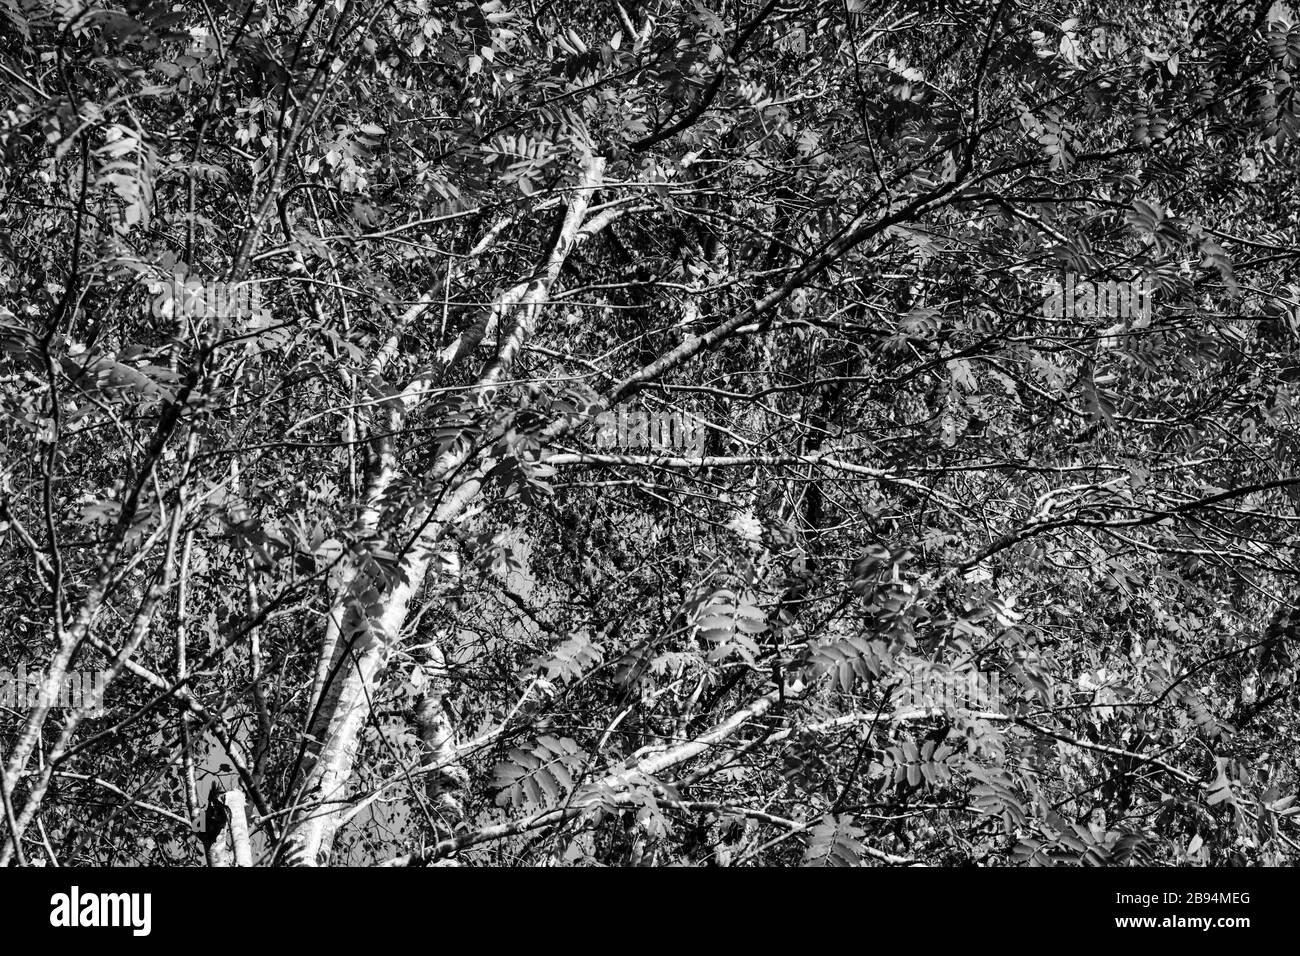 Une image en noir et blanc des feuilles de l'arbre Rowan, Sorbus aucuparia, également connu sous le nom de Mountain Ash. Speyside en Écosse. 20 octobre 2018. Banque D'Images